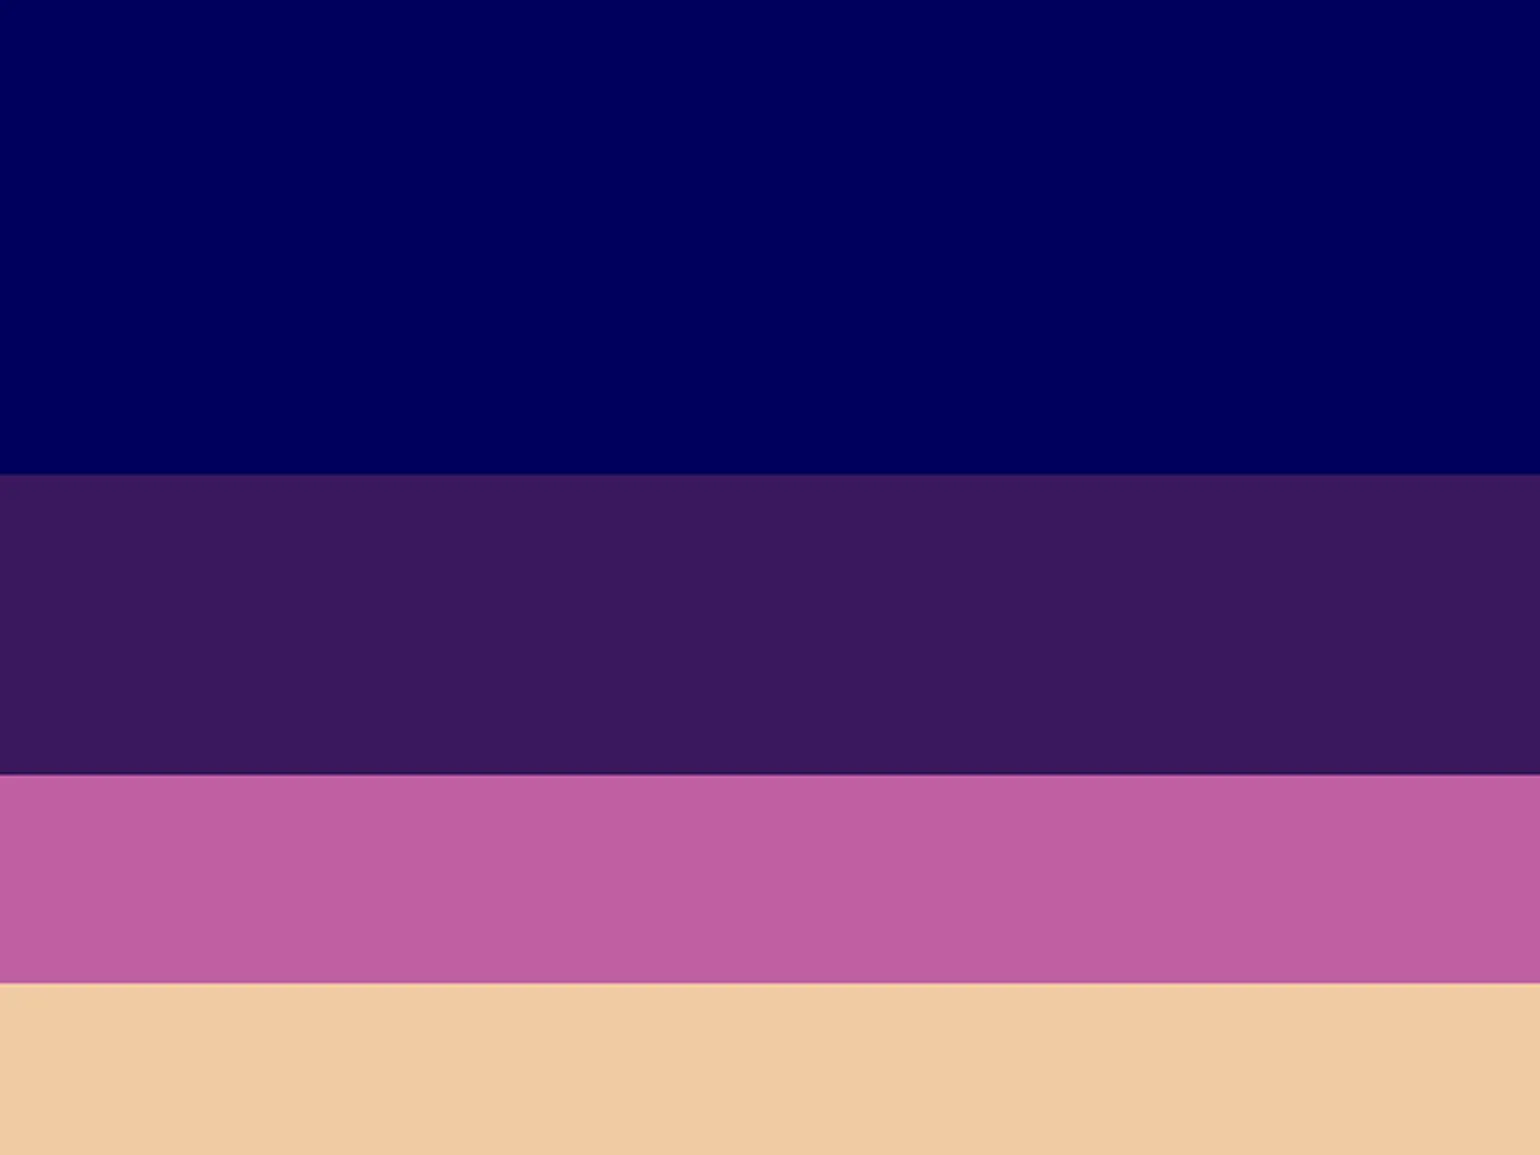 палитра с тёмно-синим, фиолетовым, розовым и бежевым